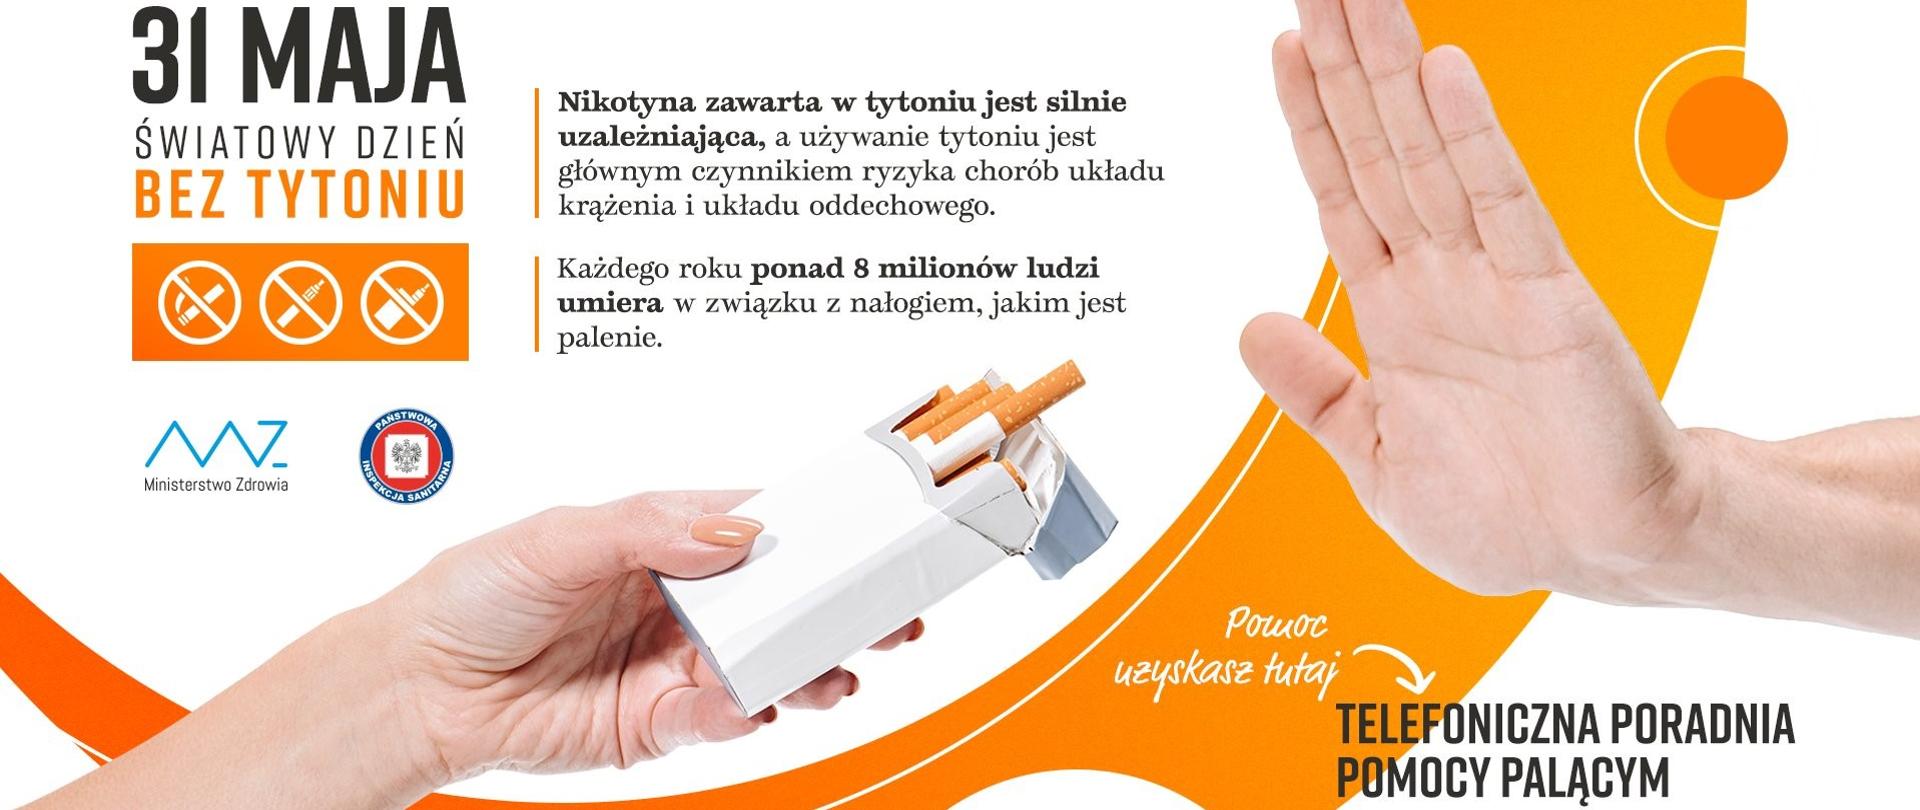 Dłoń częstuje papierosem druga dłoń wykonuje gest odmowny